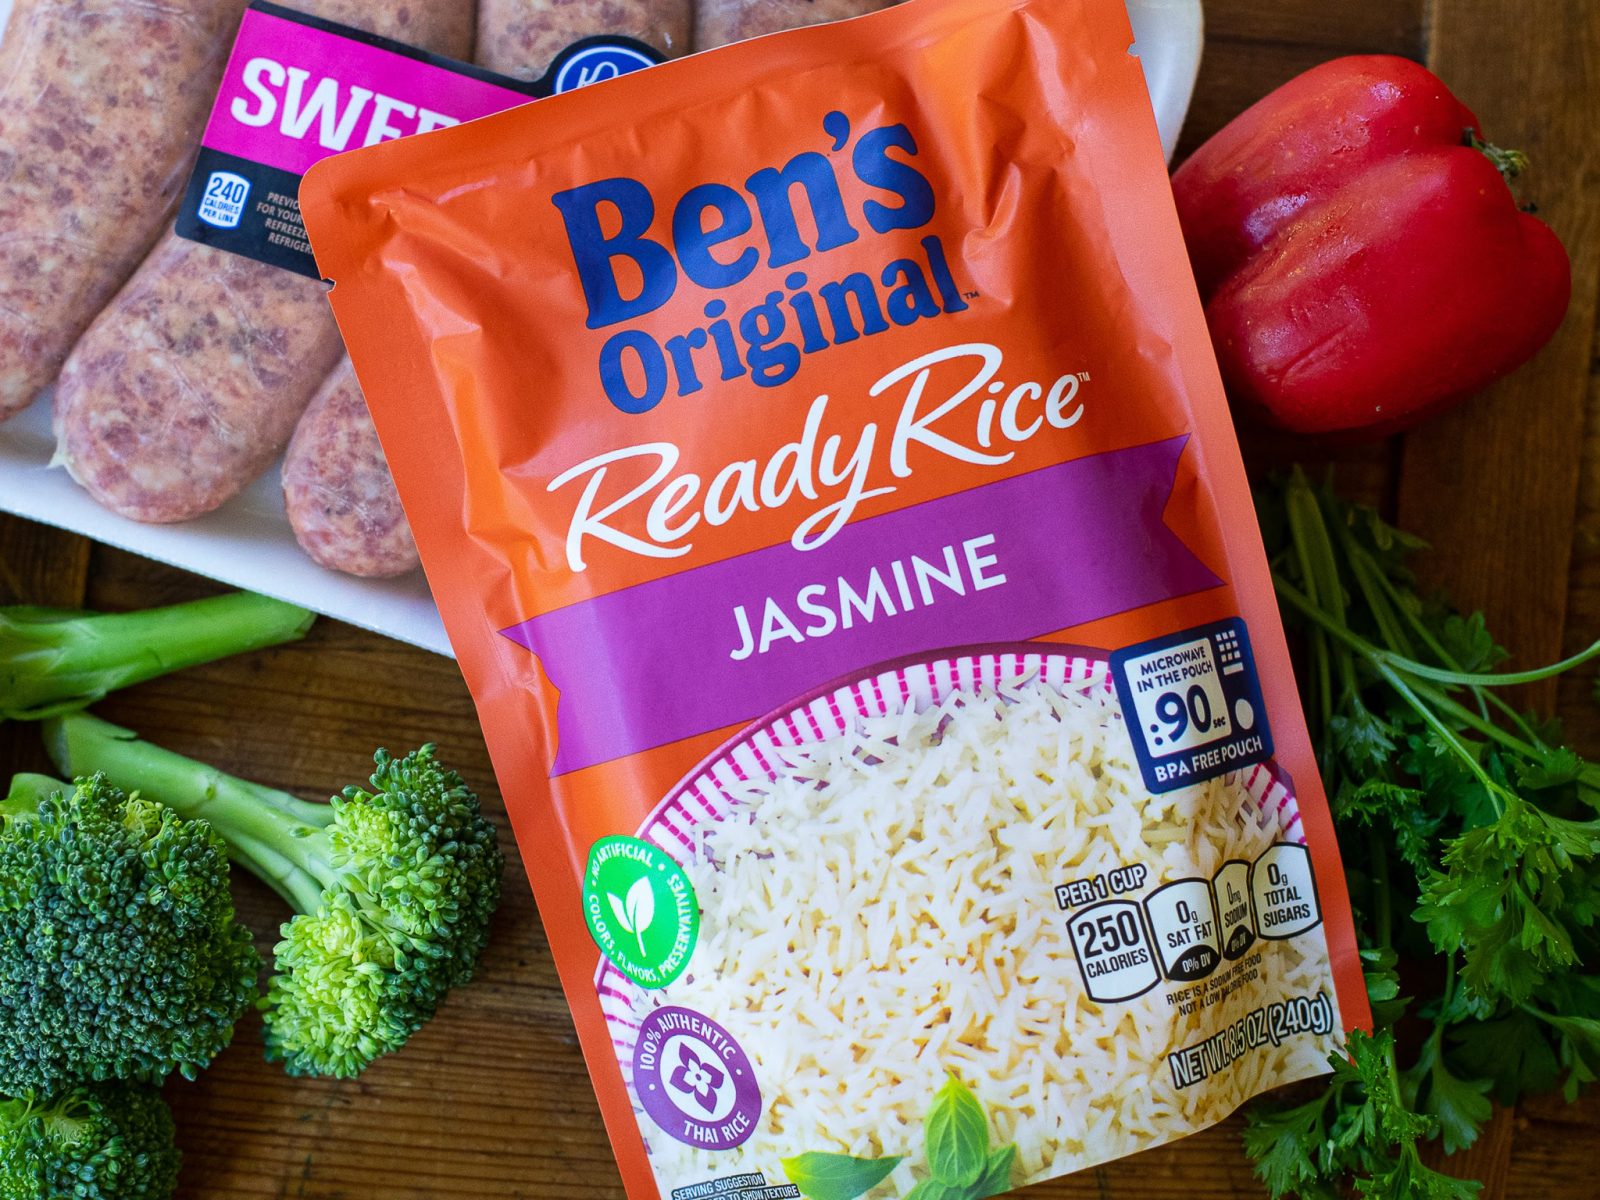 Ben’s Original Ready Rice As Low As $1.36 At Kroger